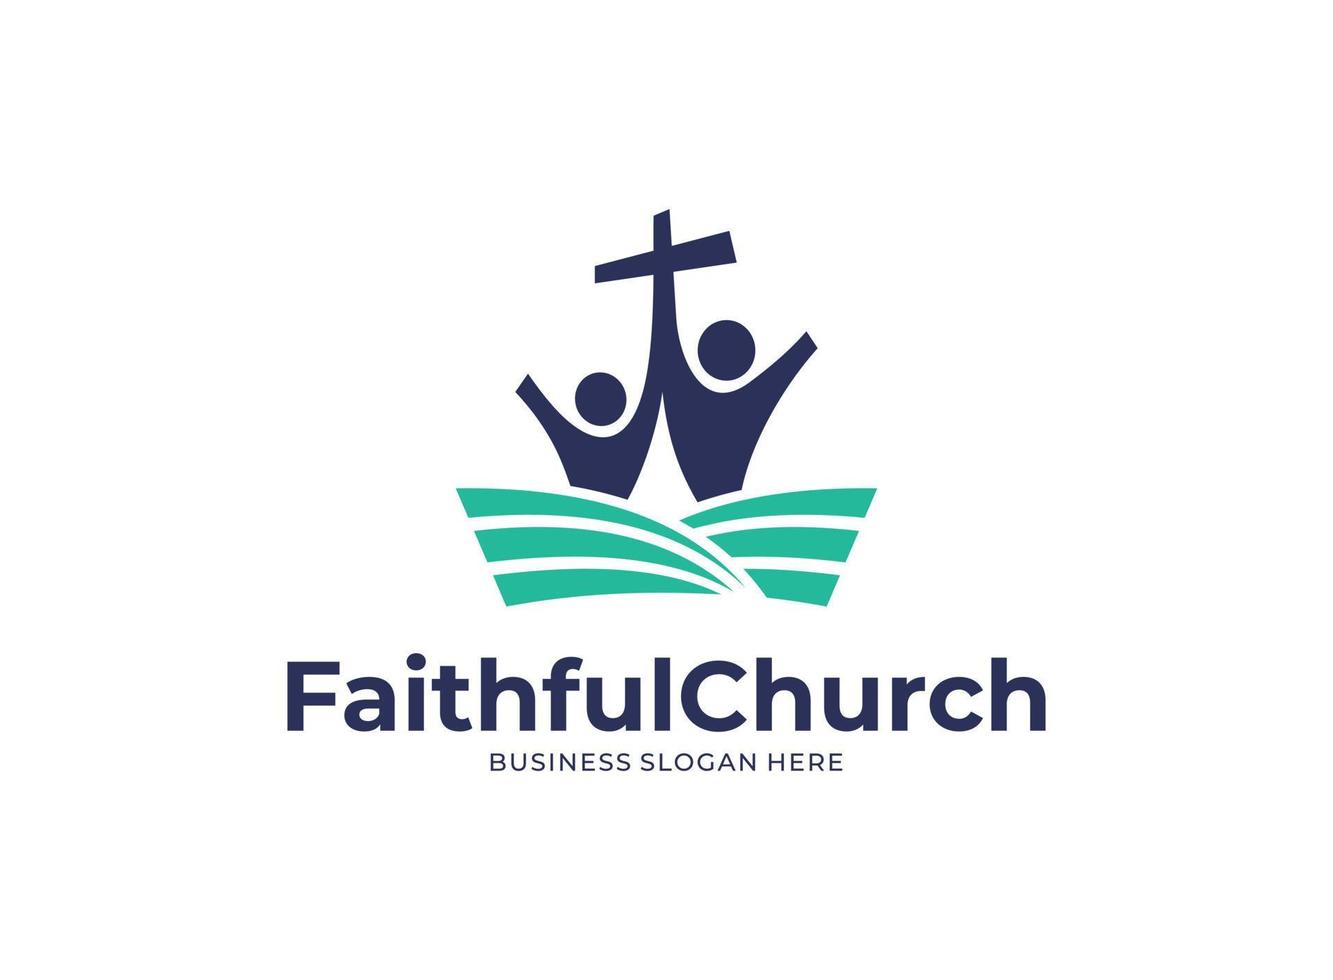 Illustrationsvektorgrafik des Logos der treuen Kirche entwirft Konzept. perfekt für Gemeinschaft, Bildung, Bibel, katholisch vektor